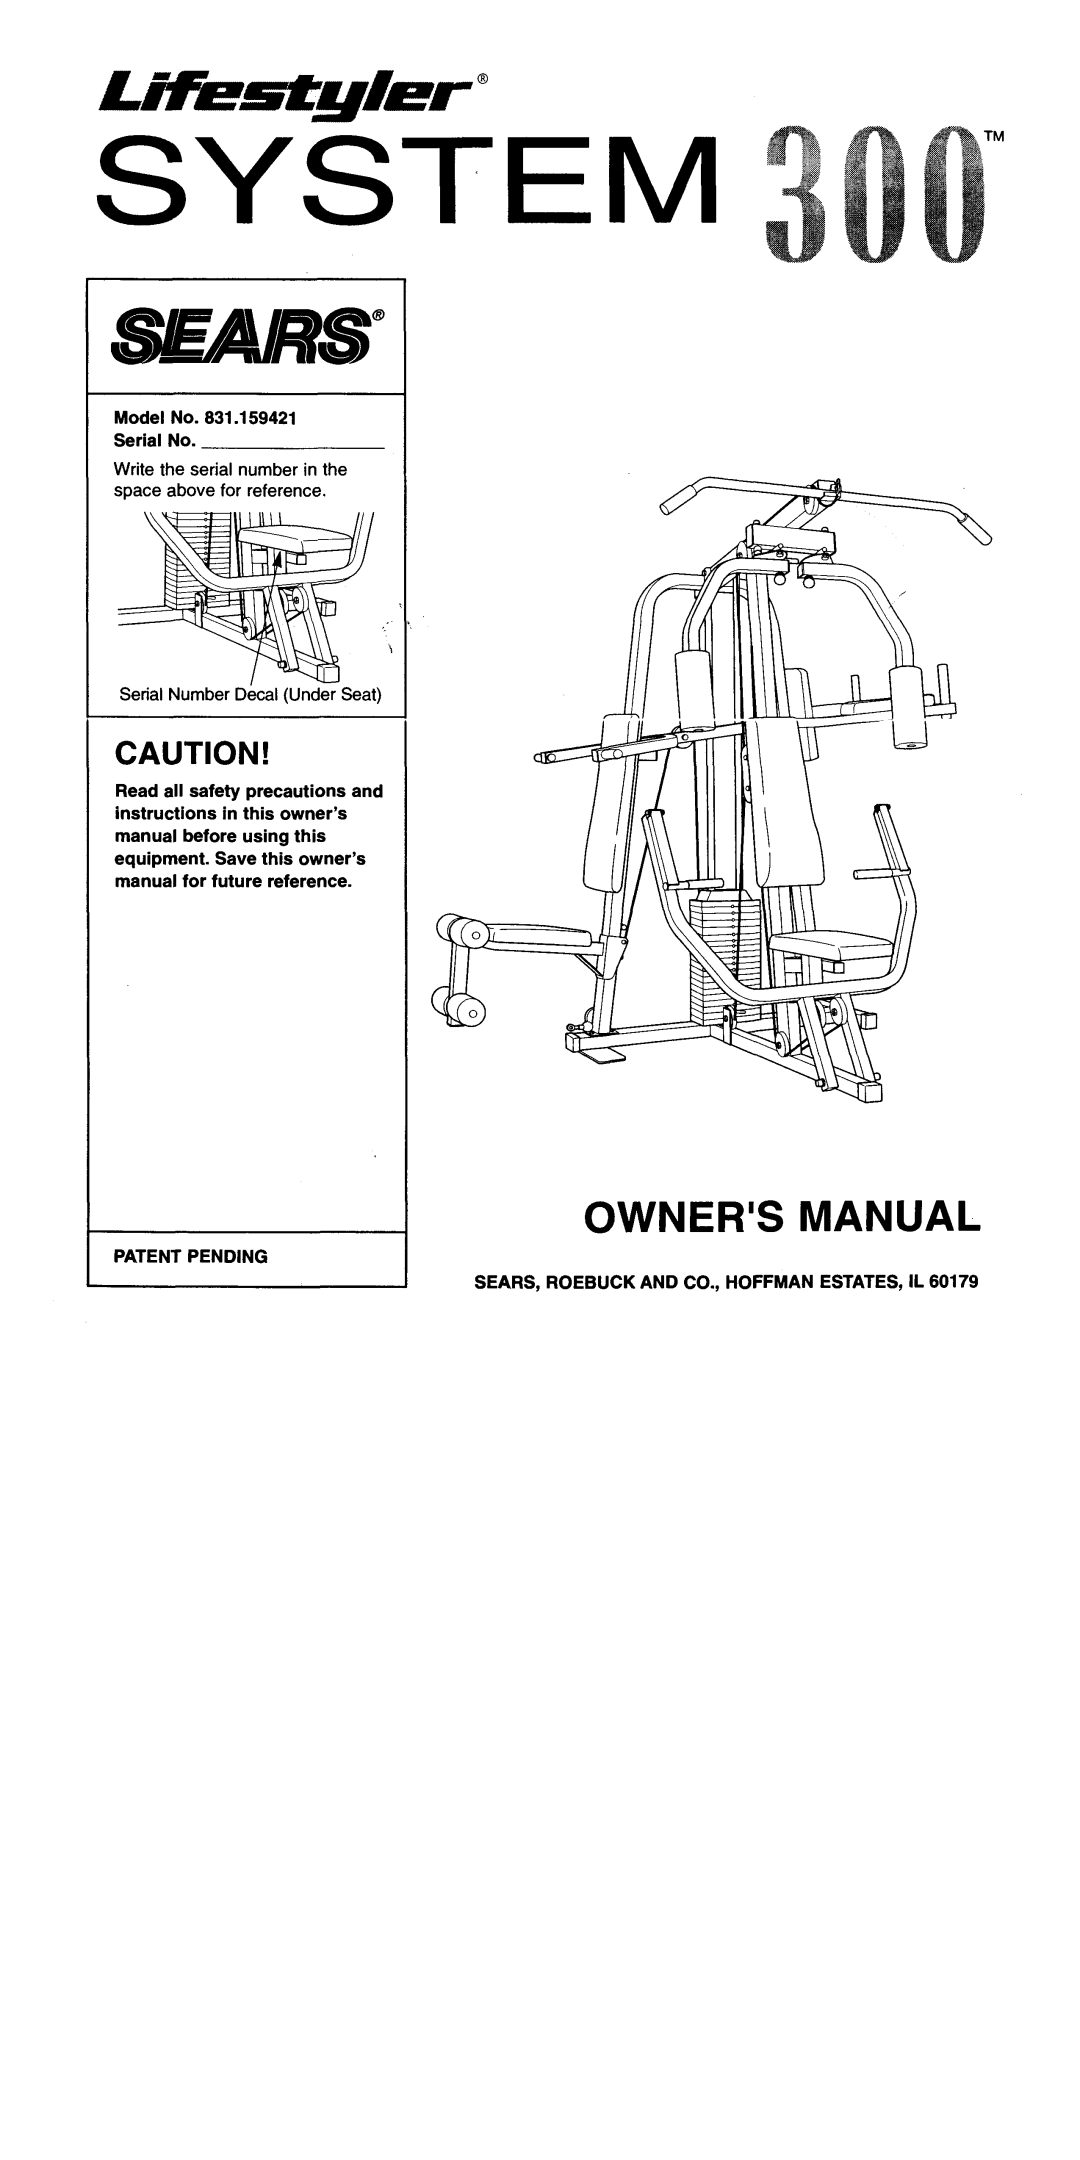 Sears 300 manual 